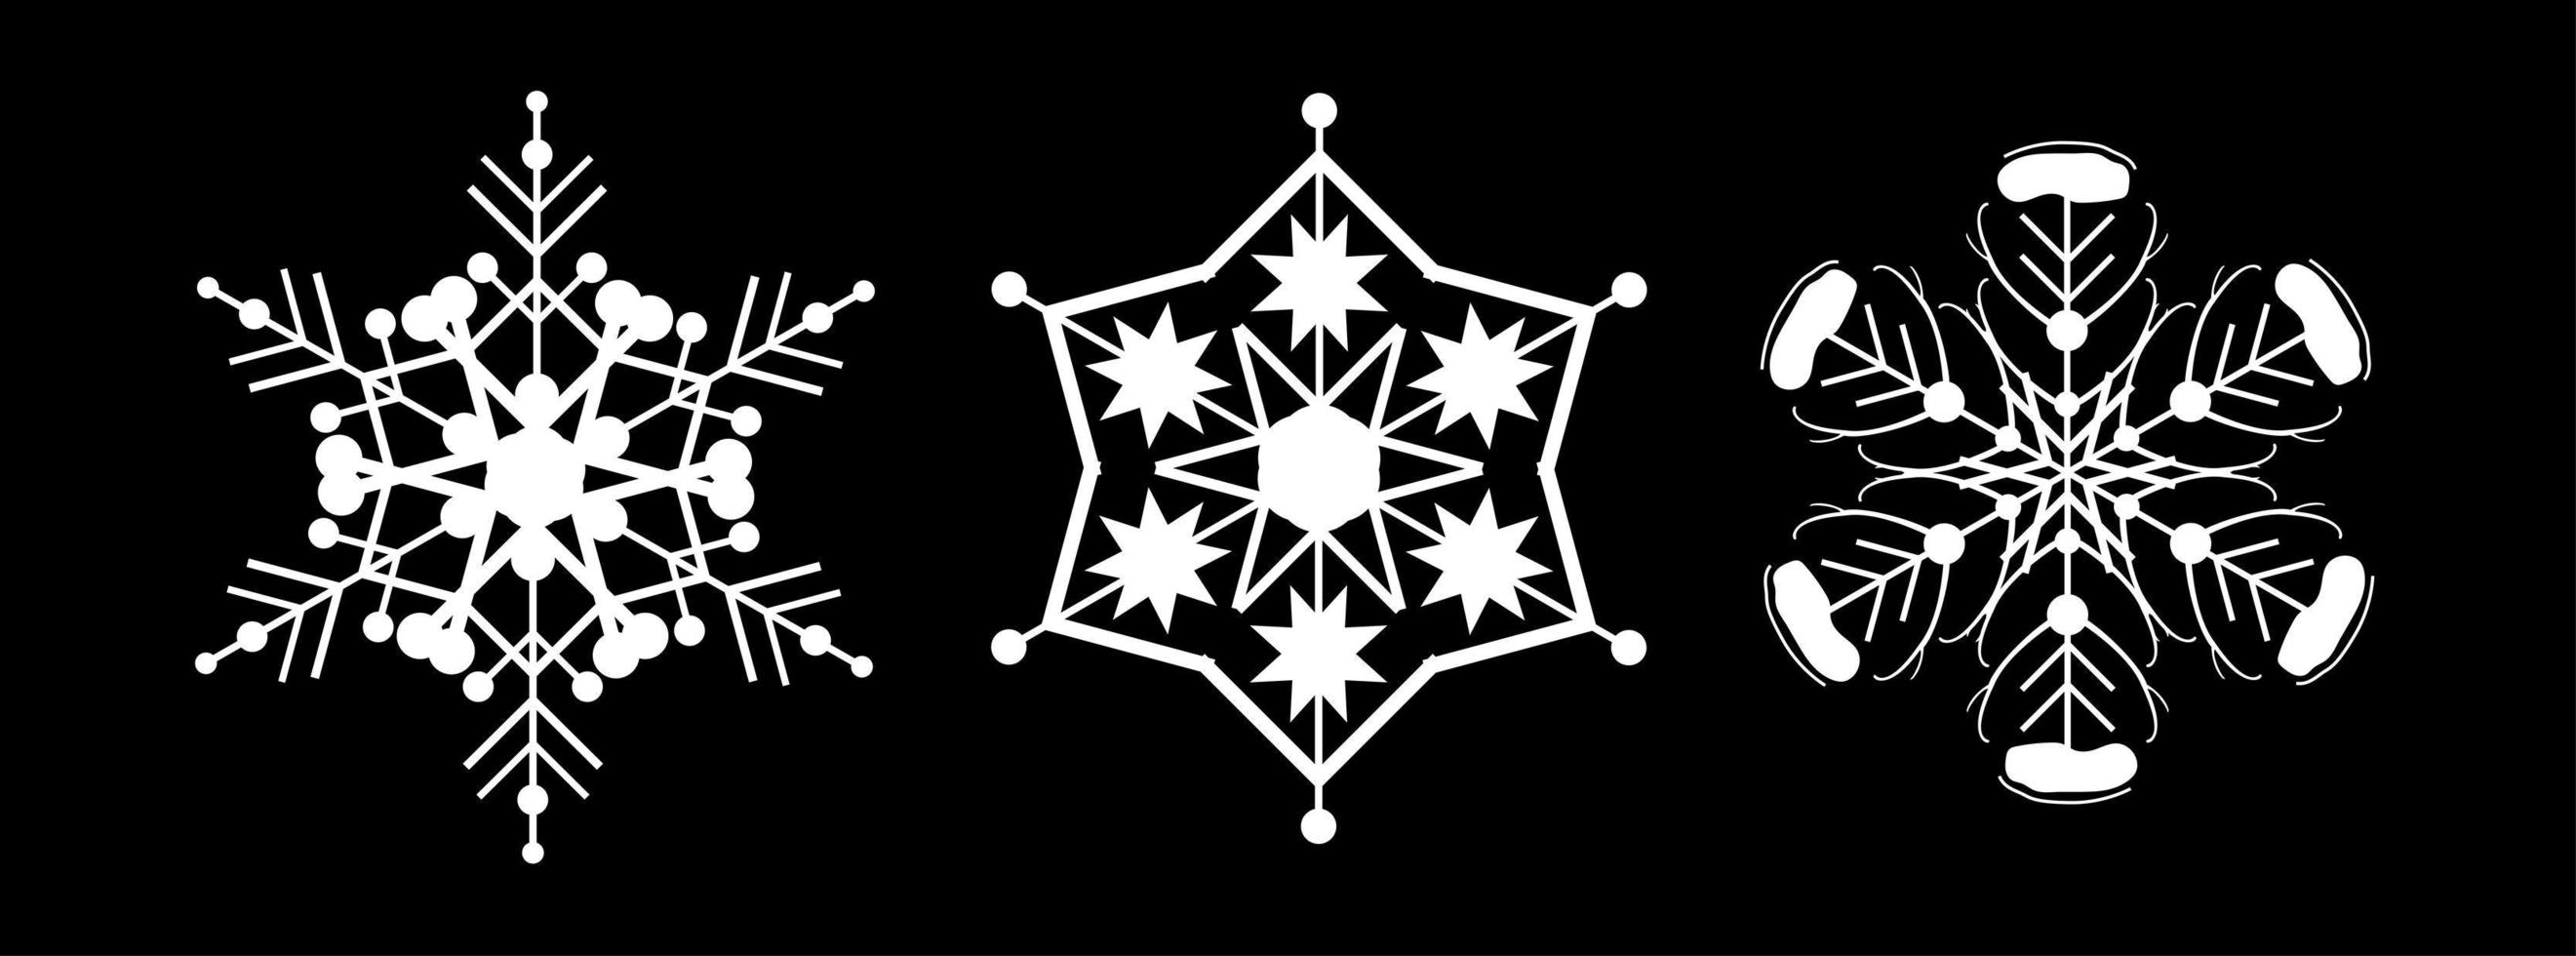 définir un flocon de neige blanc sur fond noir. décor pour noël et nouvel an conception de cartes, bannières, sites Web, icônes. illustration linéaire de vecteur géométrique élégant.